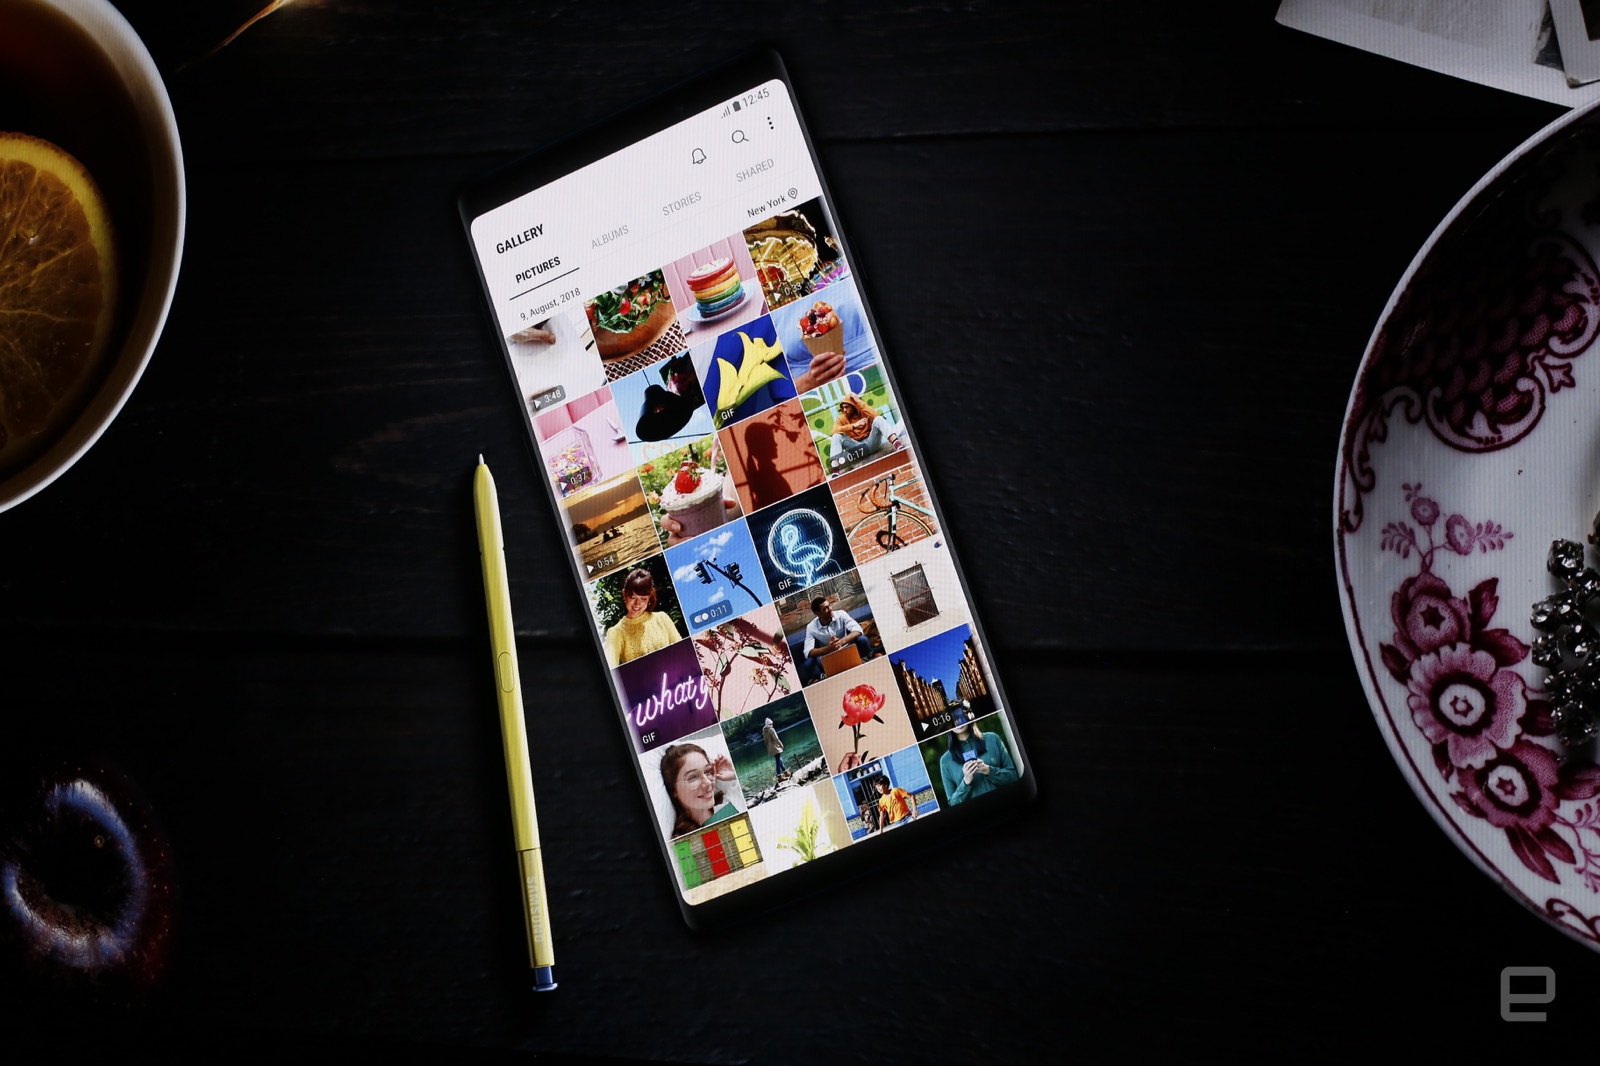 Samsung Galaxy Note 9 chính thức được ra mắt với
Snapdragon 845, 8GB RAM, bút S Pen mới, giá từ 24.5 triệu